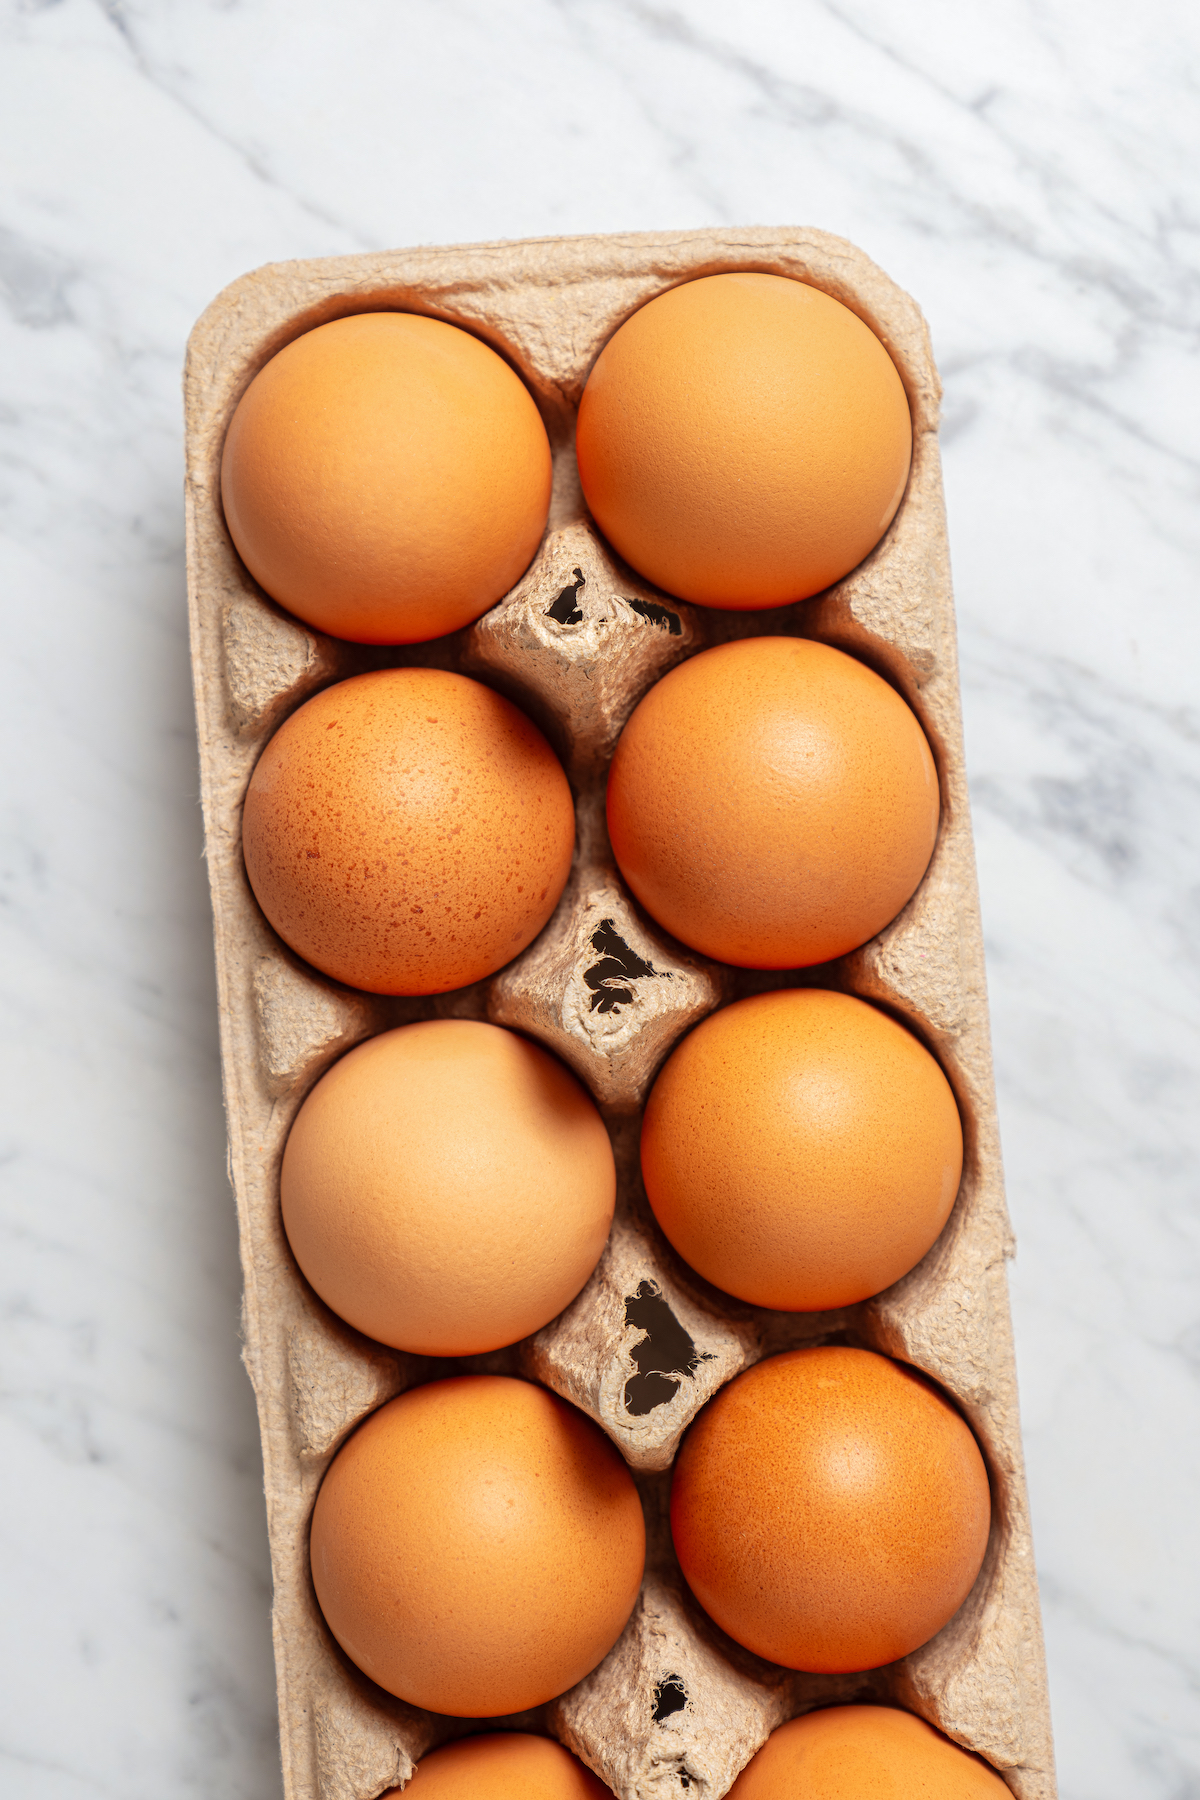 A carton of brown eggs.